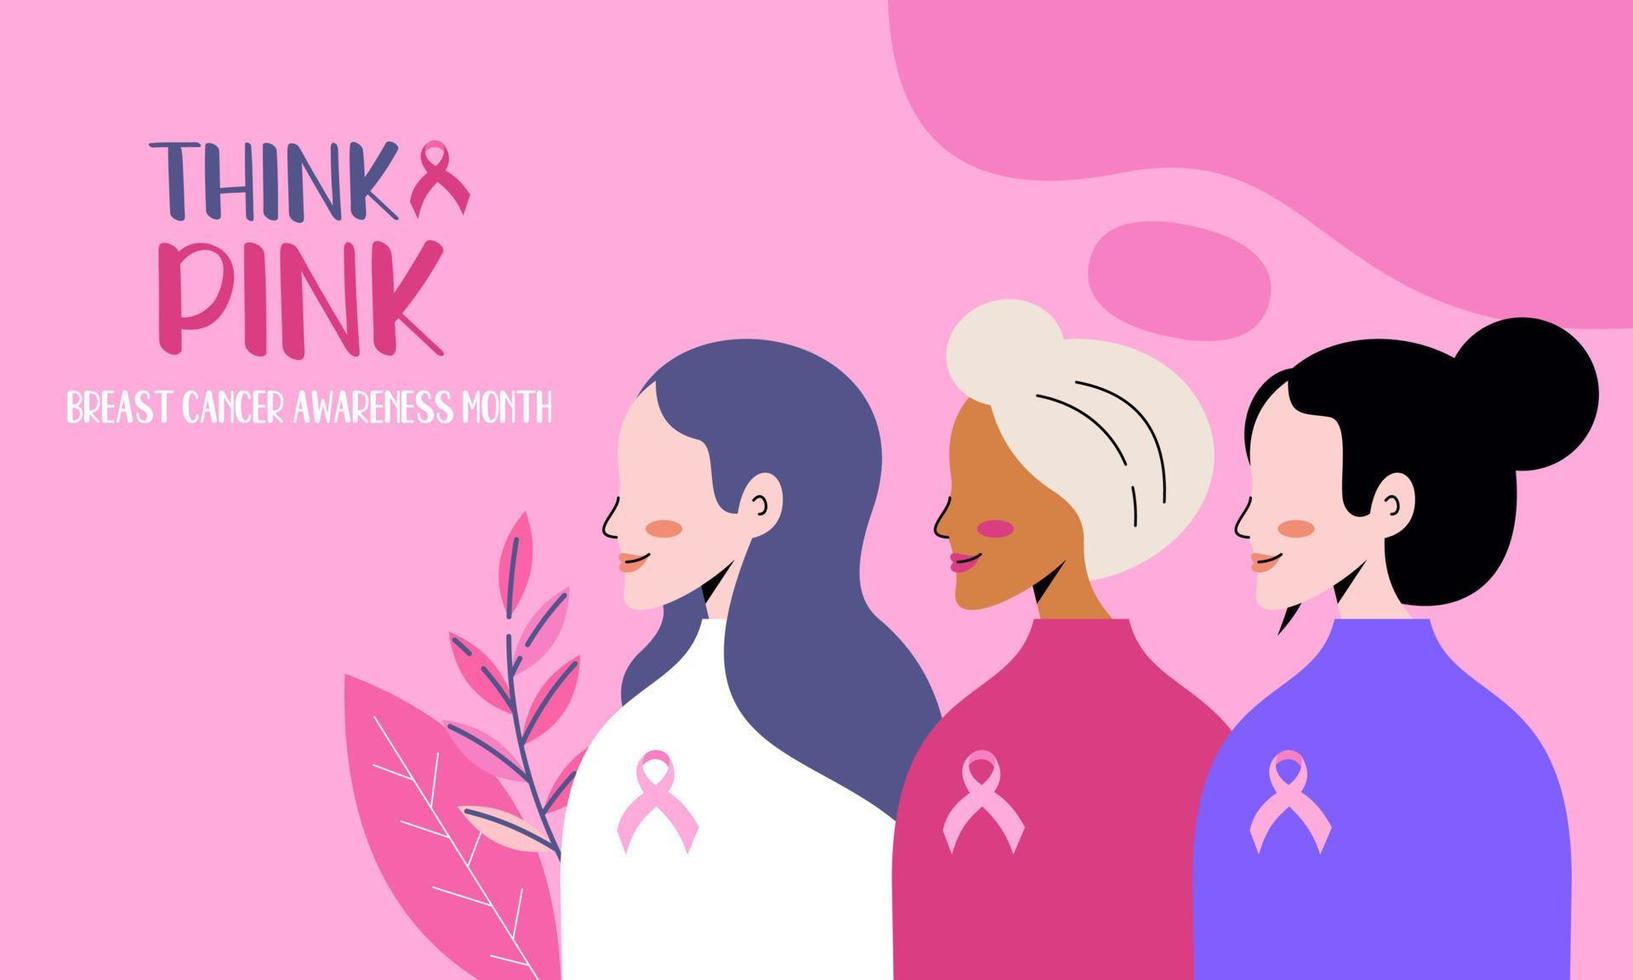 pense o rosa. ilustração do mês de conscientização do câncer de mama vetor